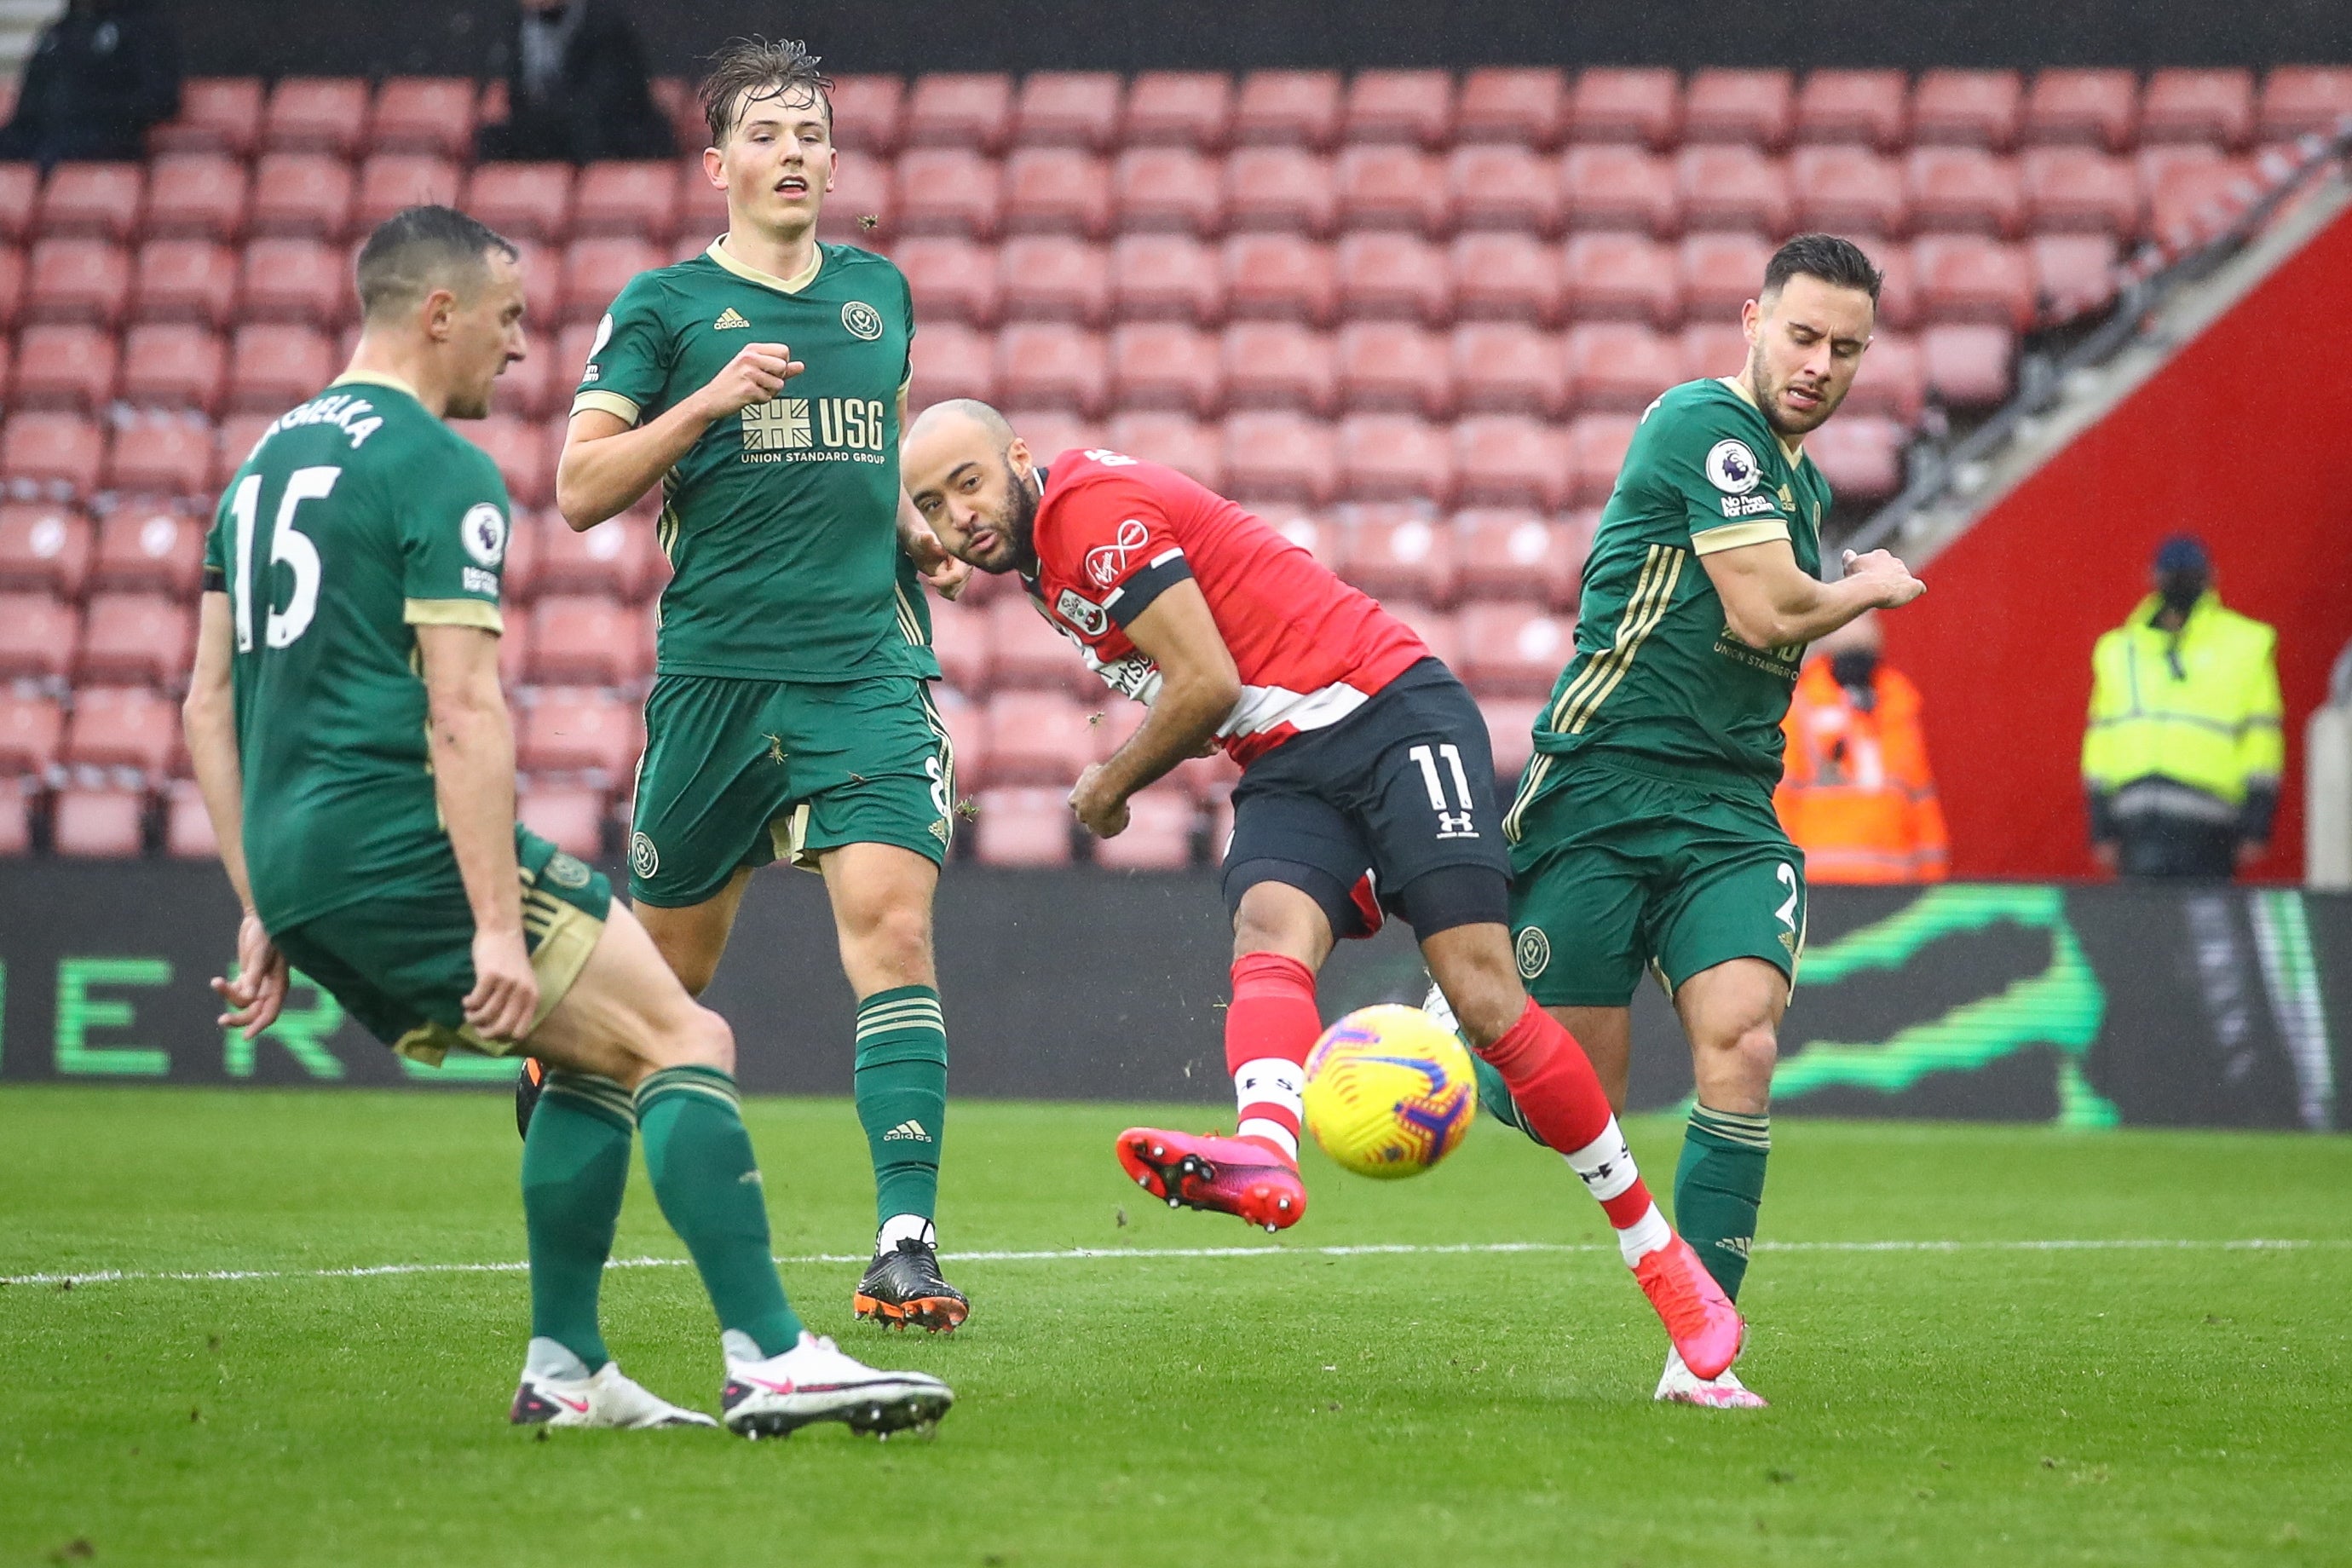 Nathan Redmond makes it 3-0 for Southampton